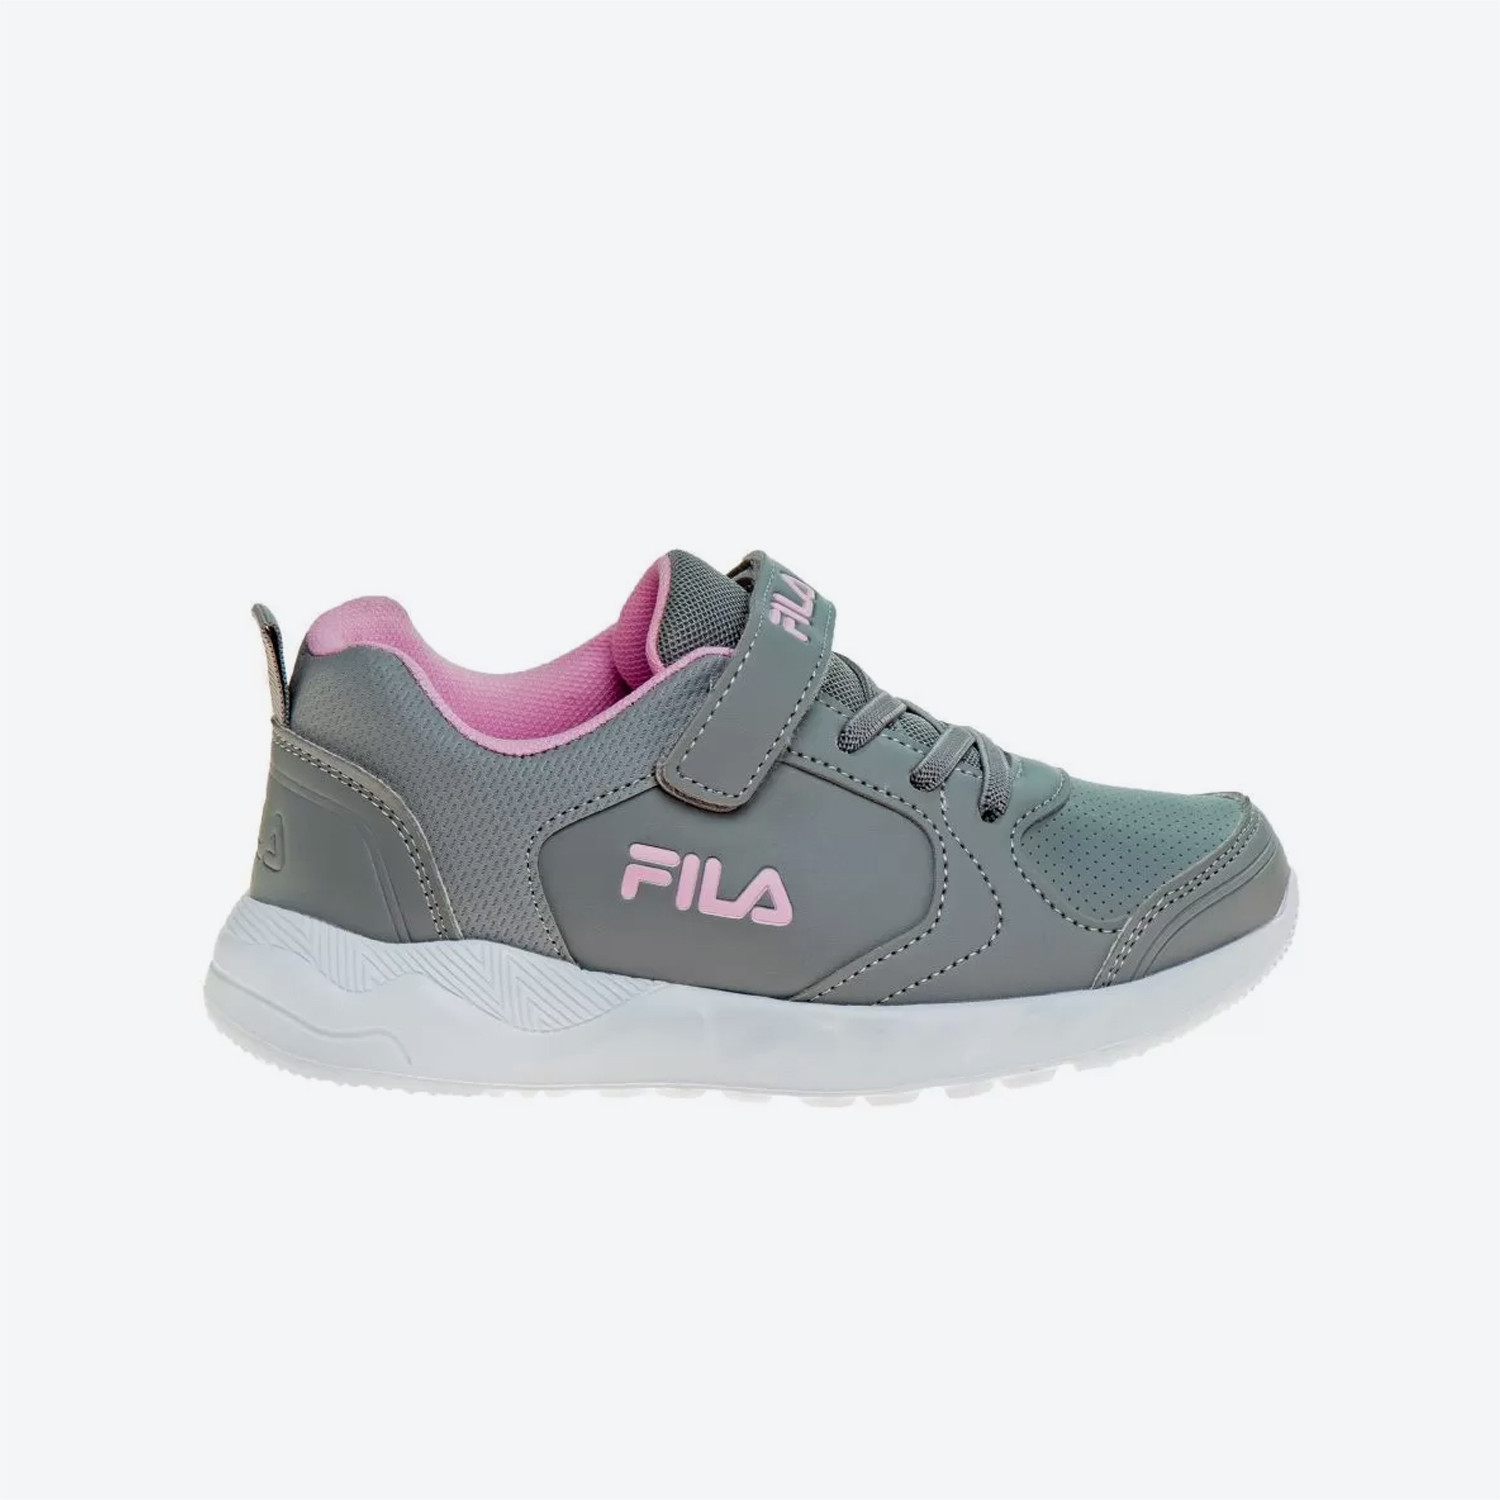 Fila Comfort Breeze 2 Footwear Παιδικά Παπούτσια (9000087748_25799)